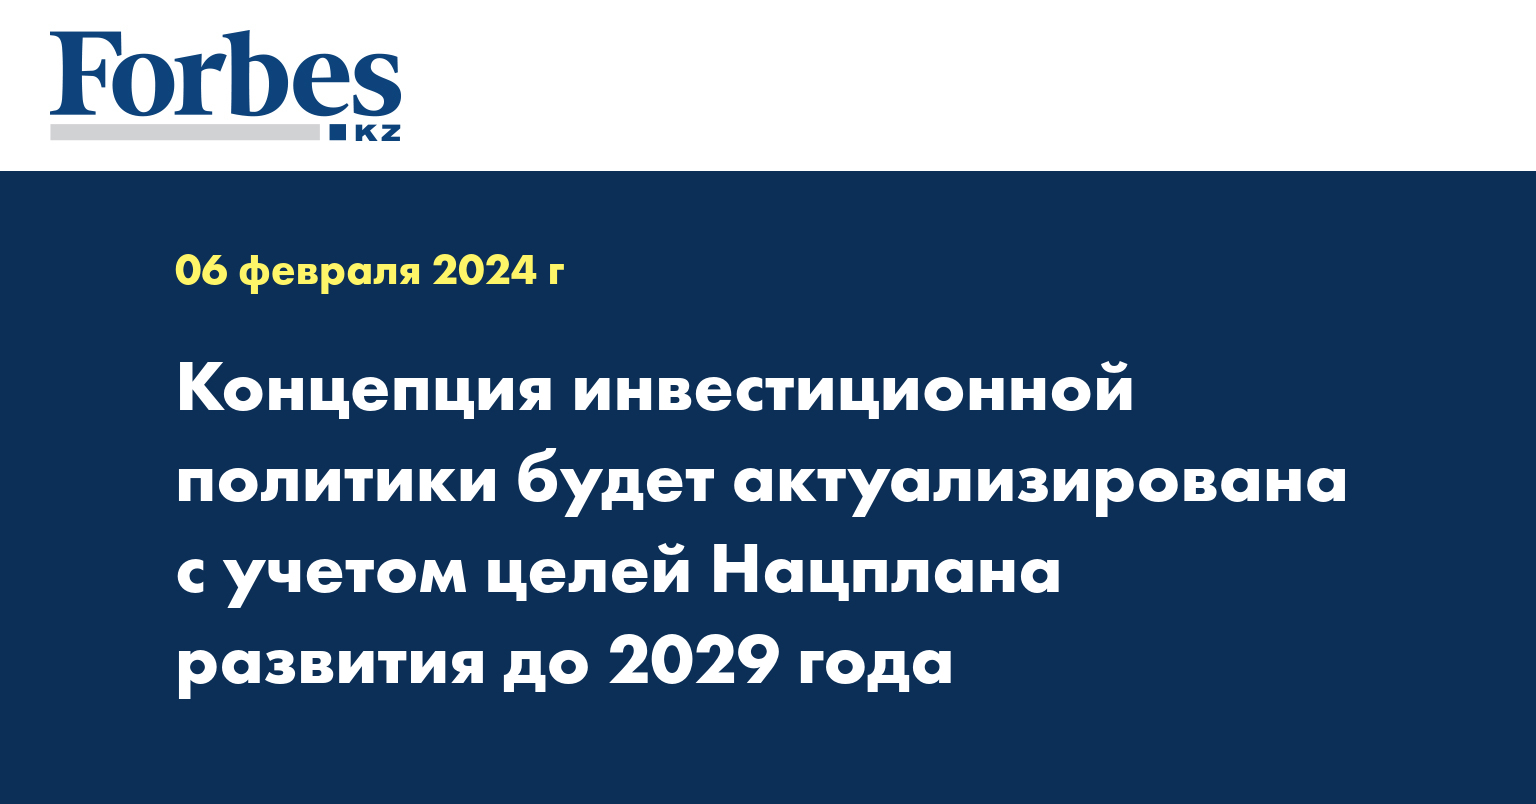 Концепция инвестиционной политики будет актуализирована с учётом целей Нацплана развития до 2029 года